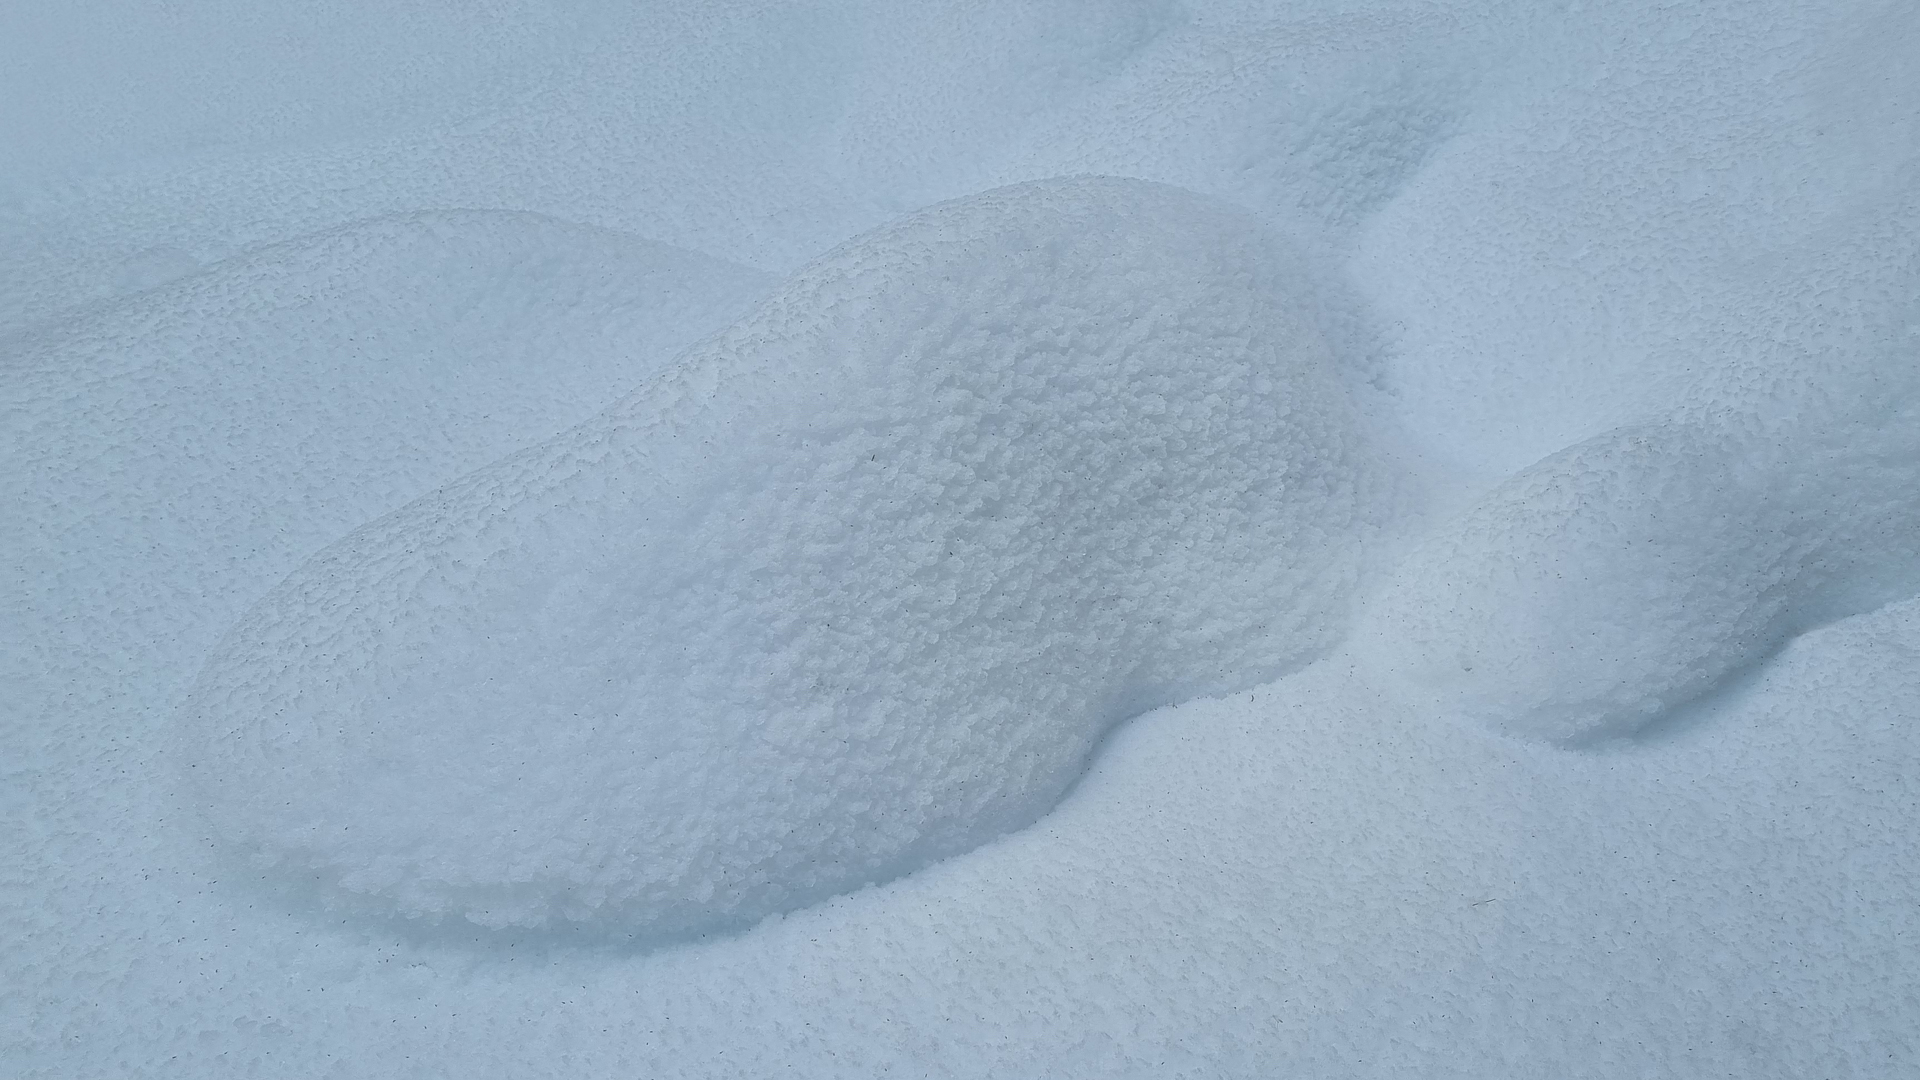 Fotostrecke Schnee Abbildung 18: Waldschnee